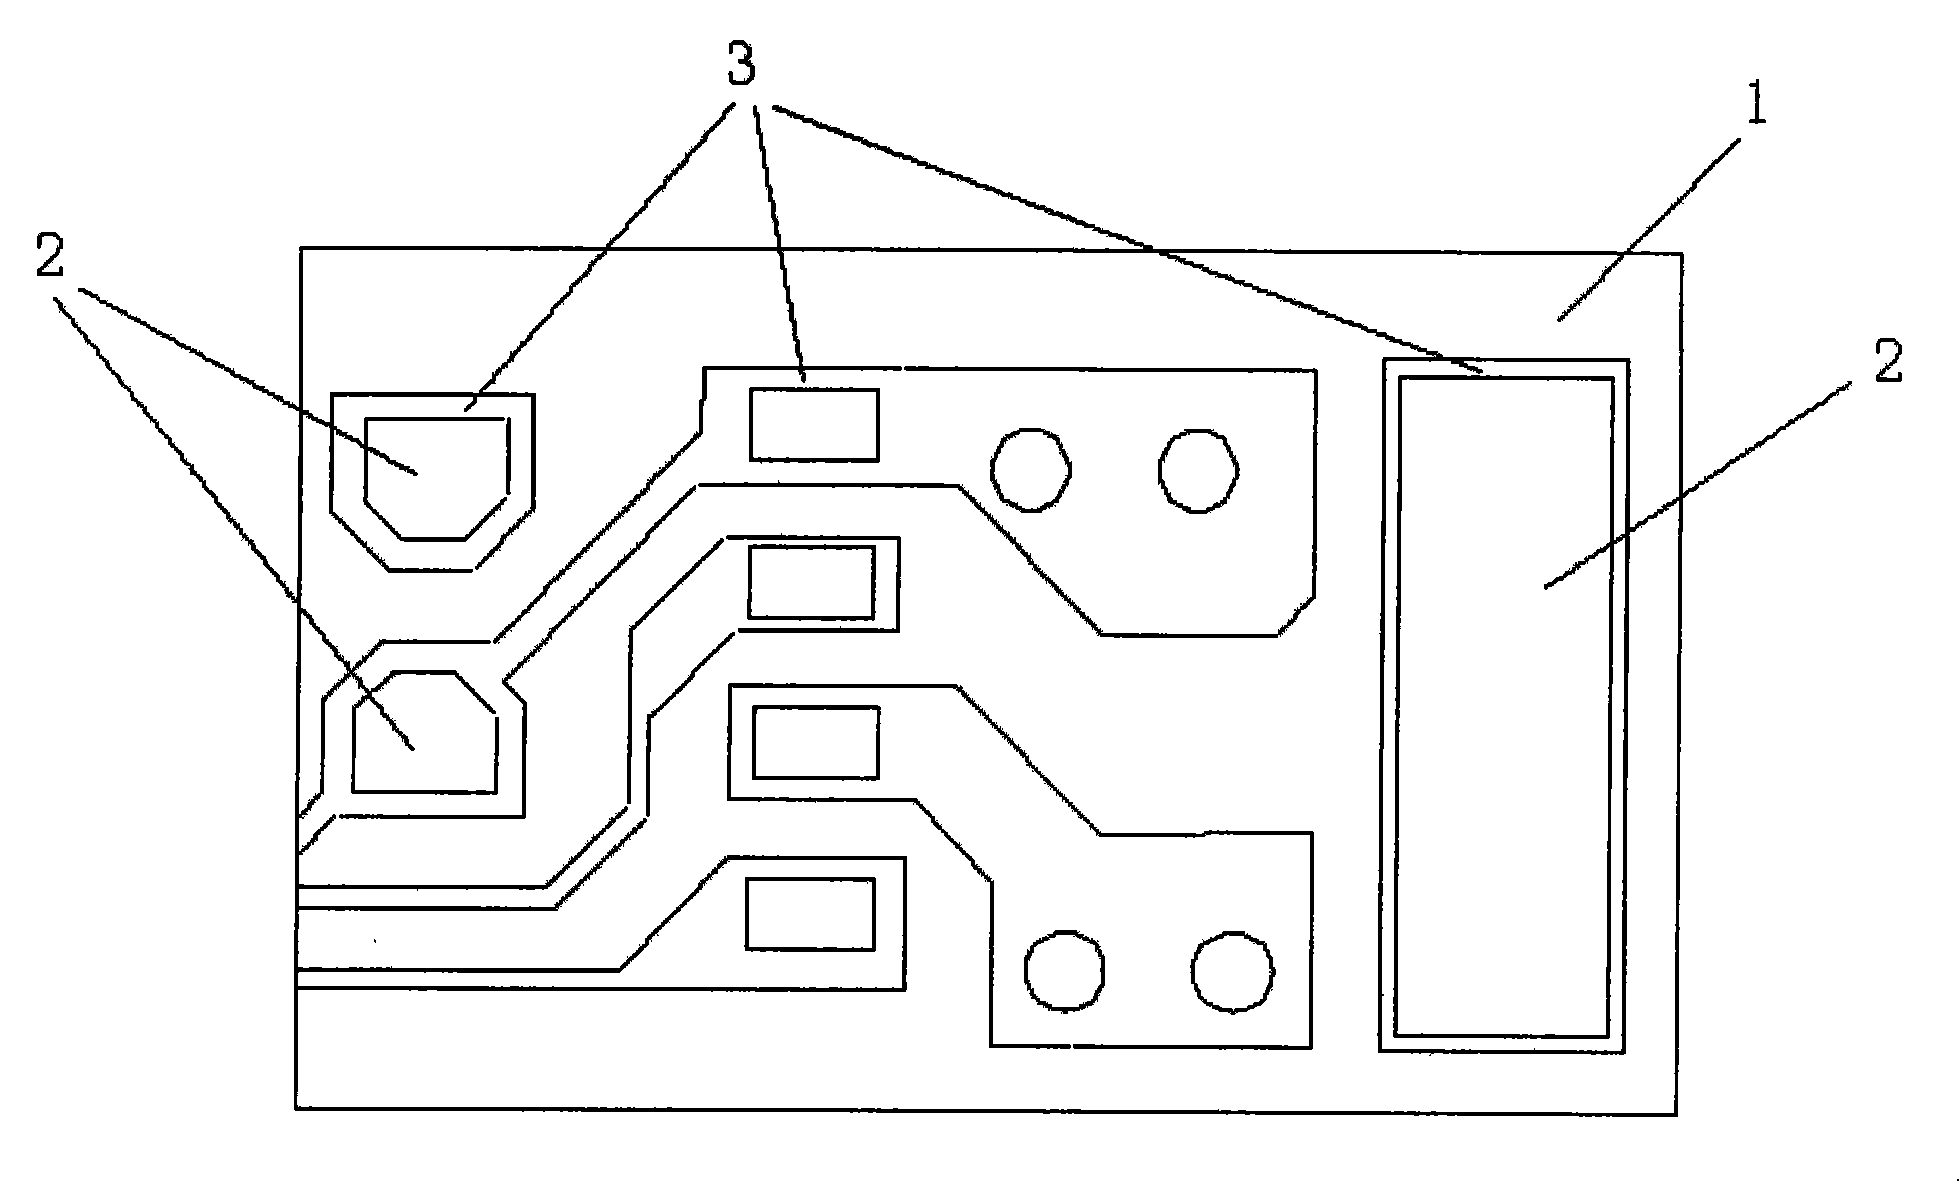 Method for preparing solder pad of printed circuit board